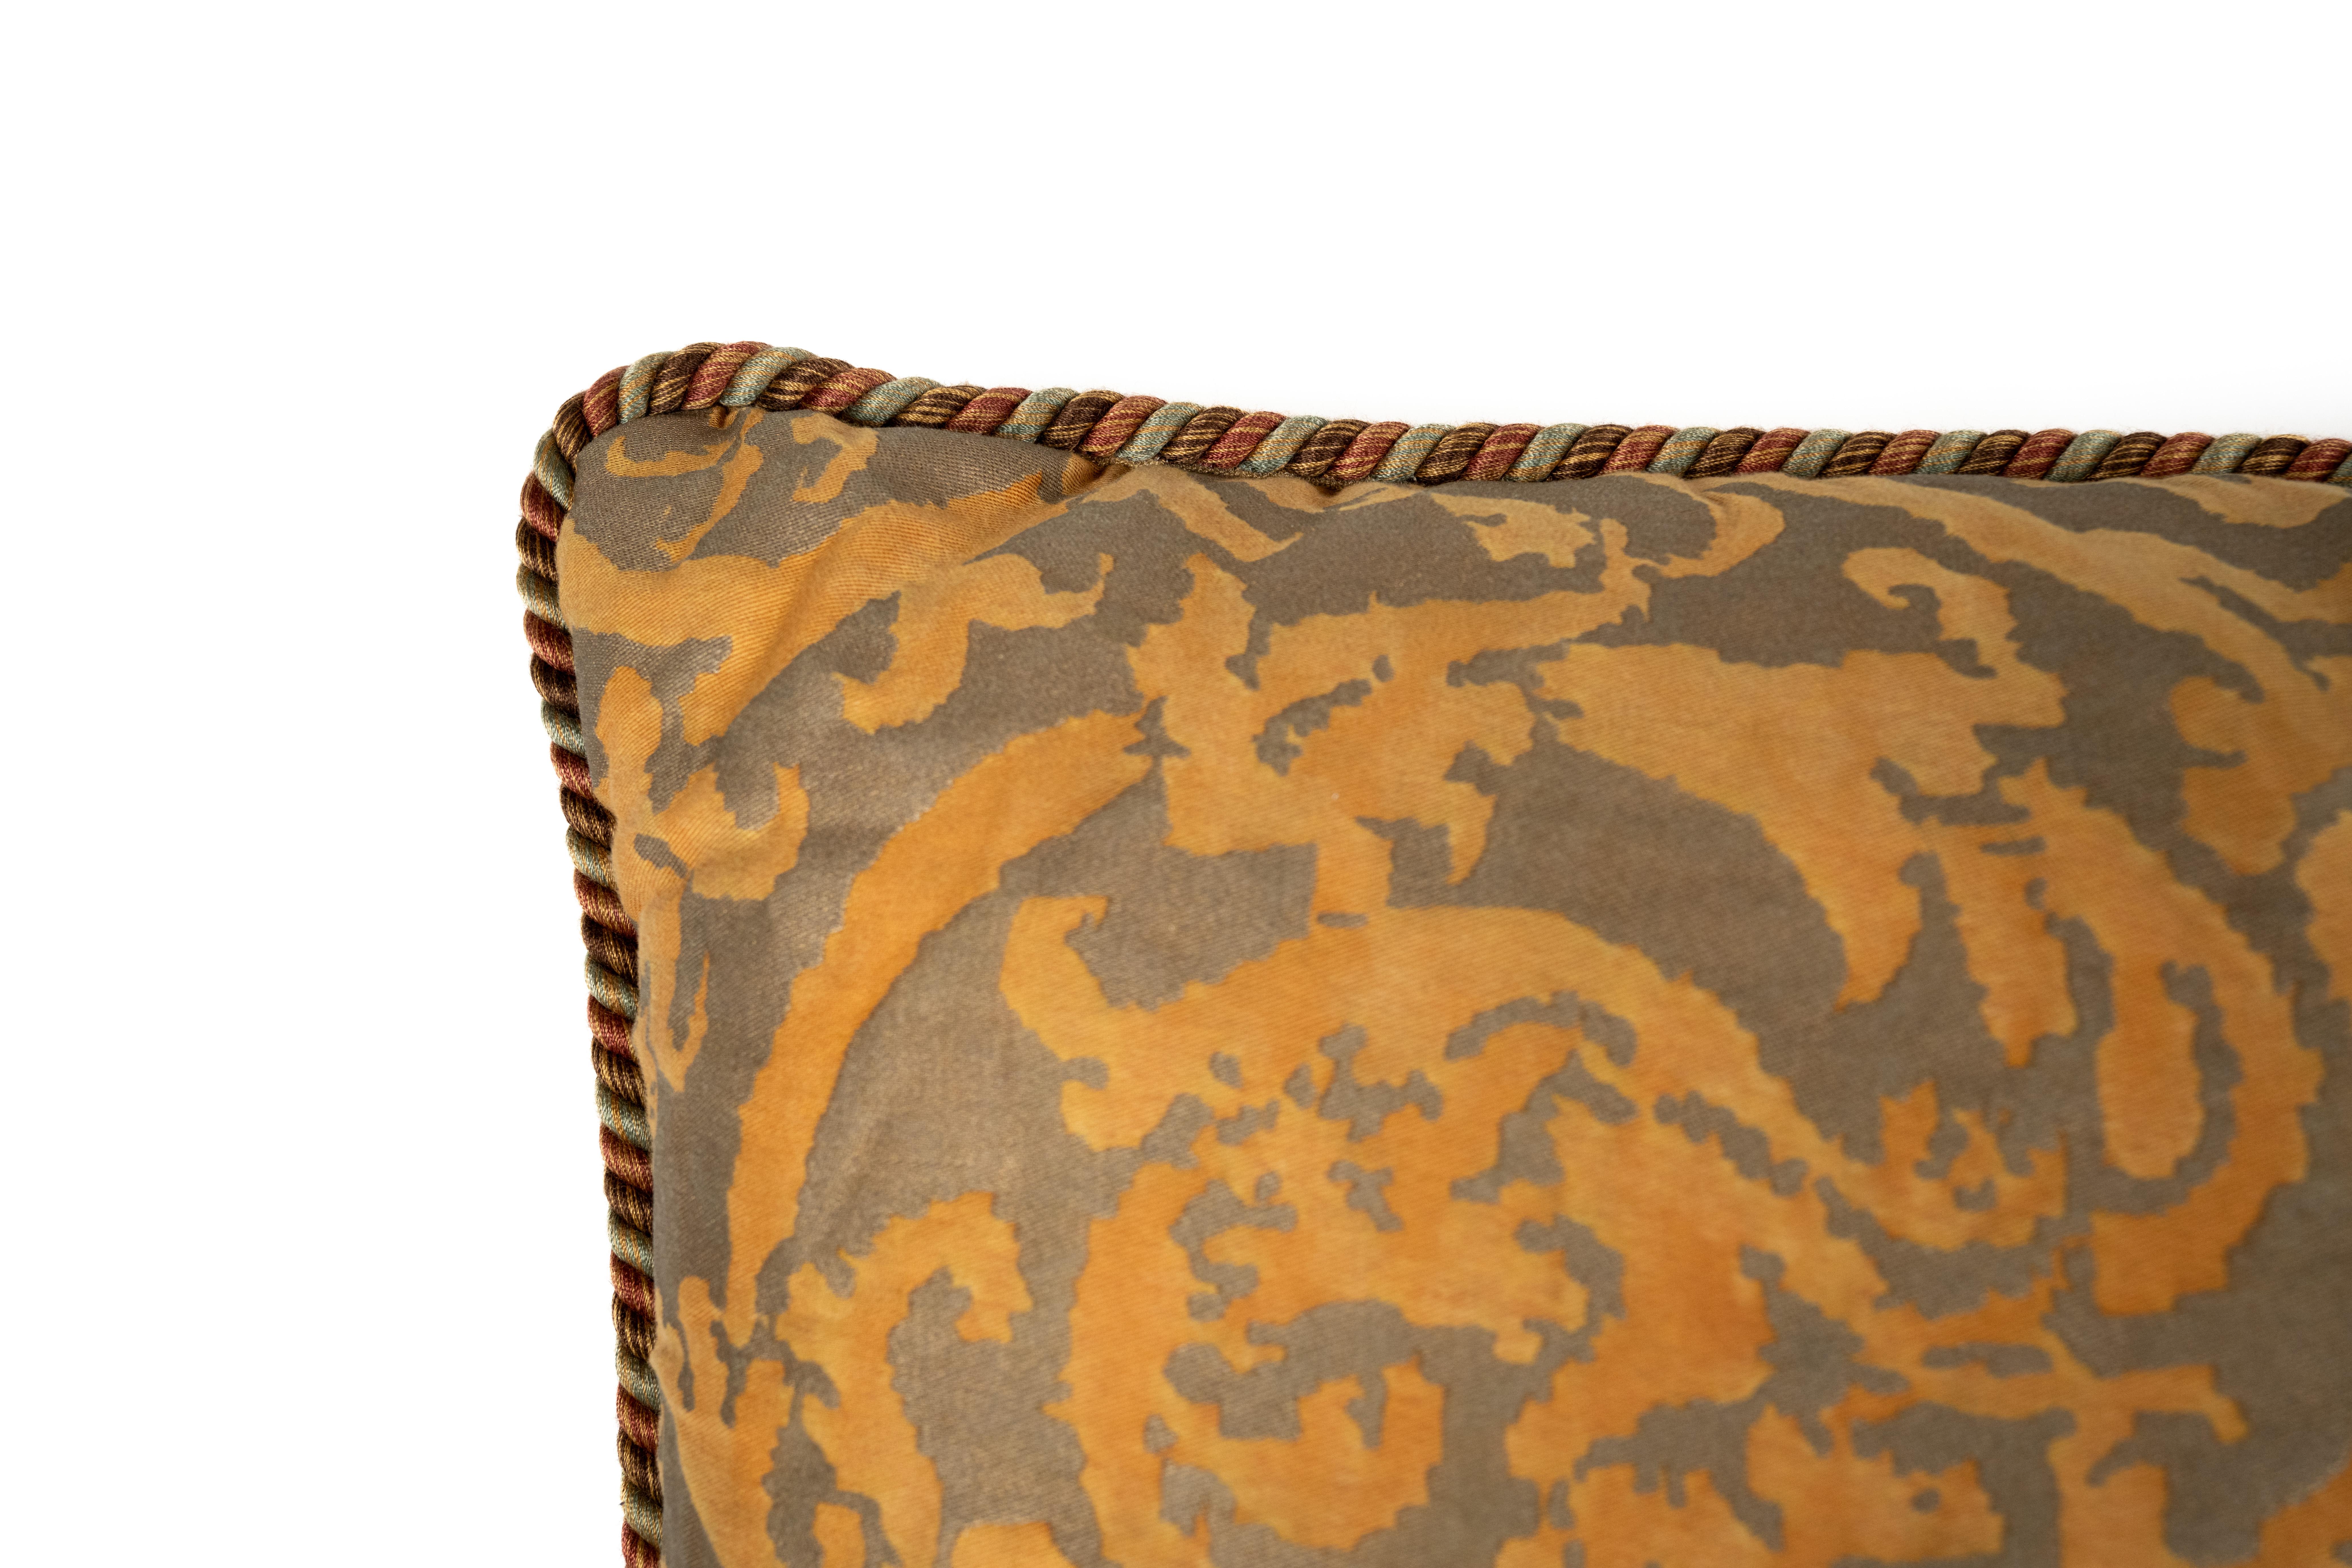 Un coussin en tissu Fortuny dans le motif Farnese, en Tangerine et Gray, une couleur abandonnée. Il est orné d'une bordure unique en forme de frange de brosse. Le motif présente un dessin de vignes torsadées et de fleurs botaniques qui est à la fois